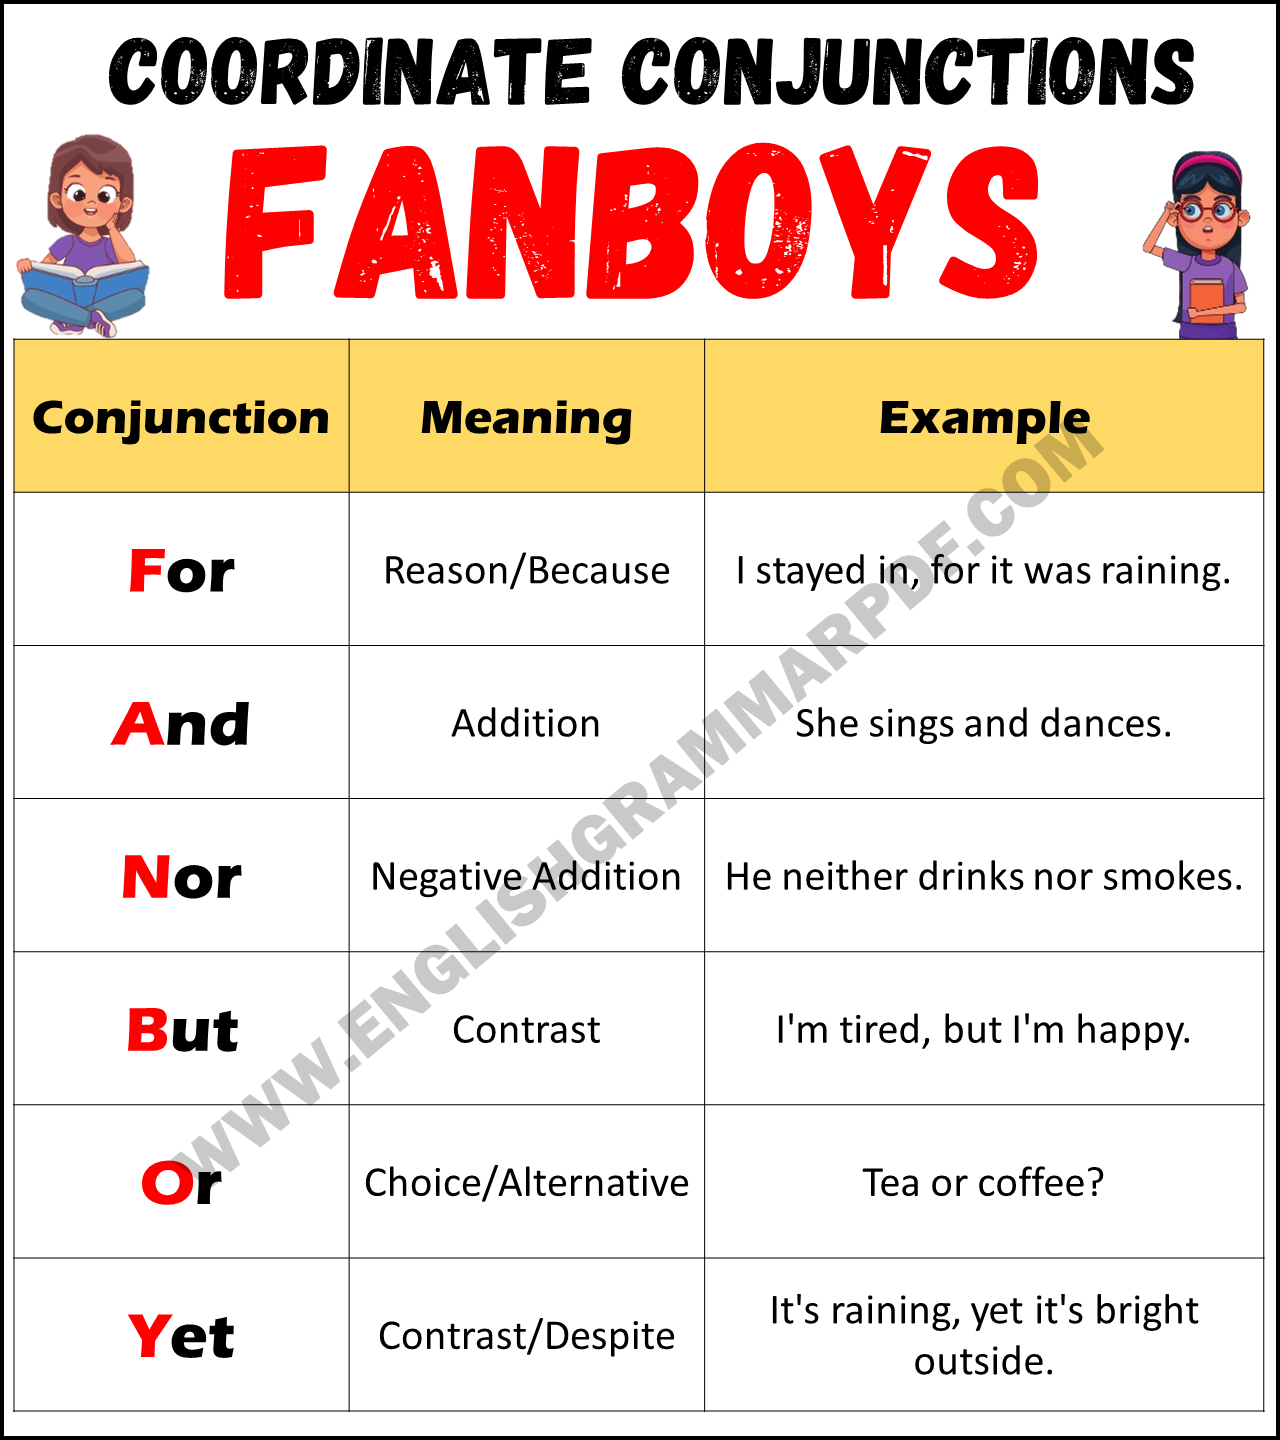 Fanboys